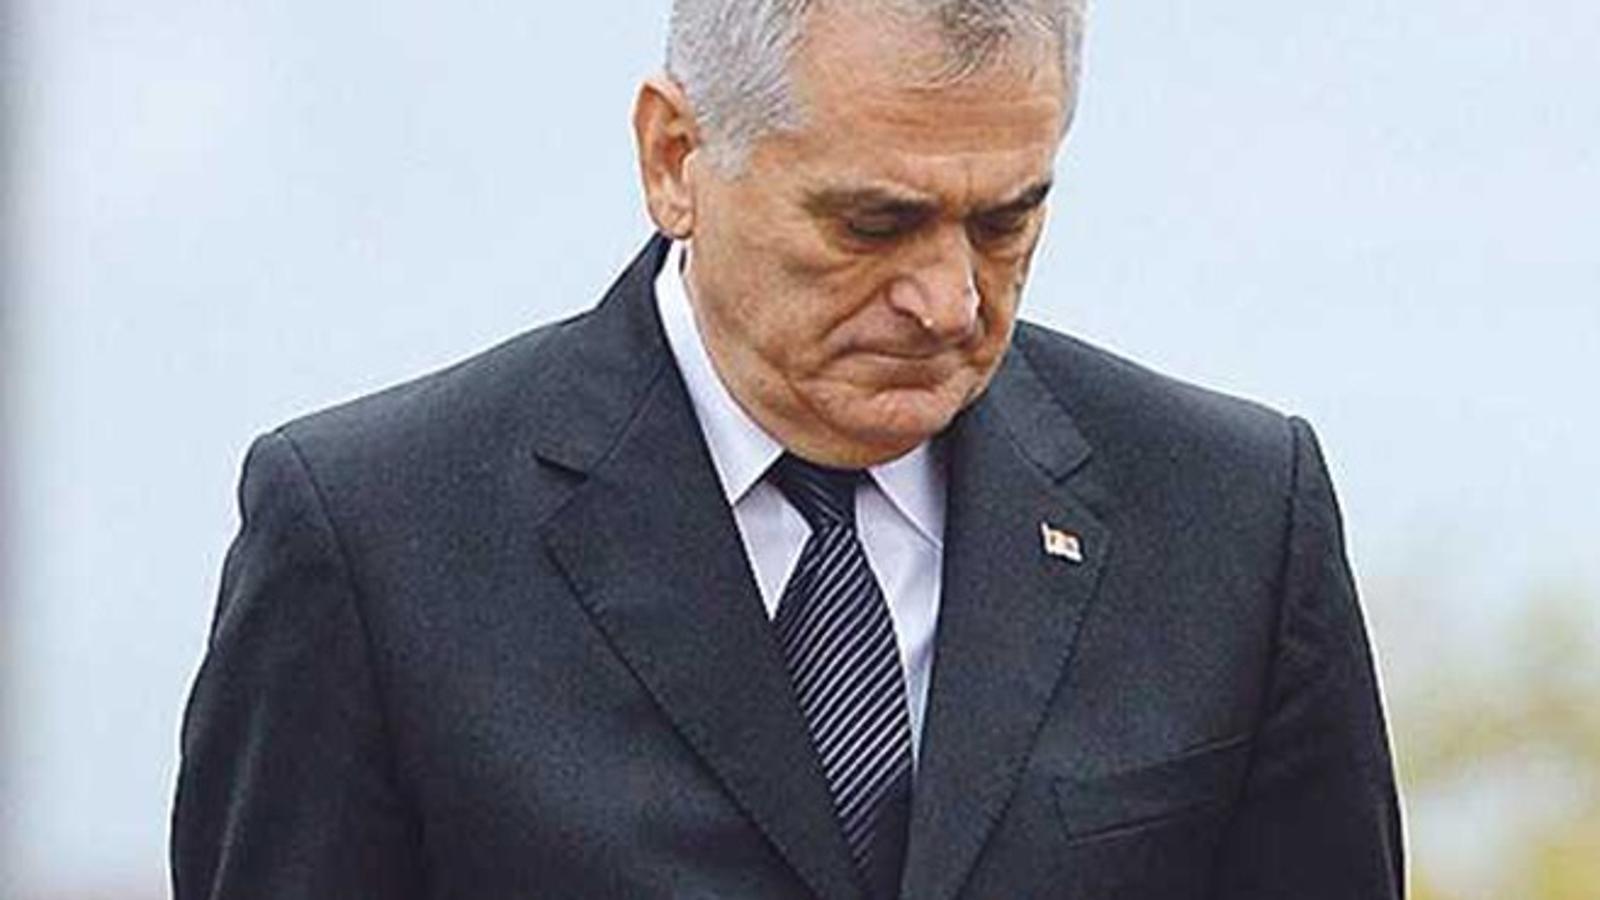 Srbijanski predsjednik, Tomislav Nikolić